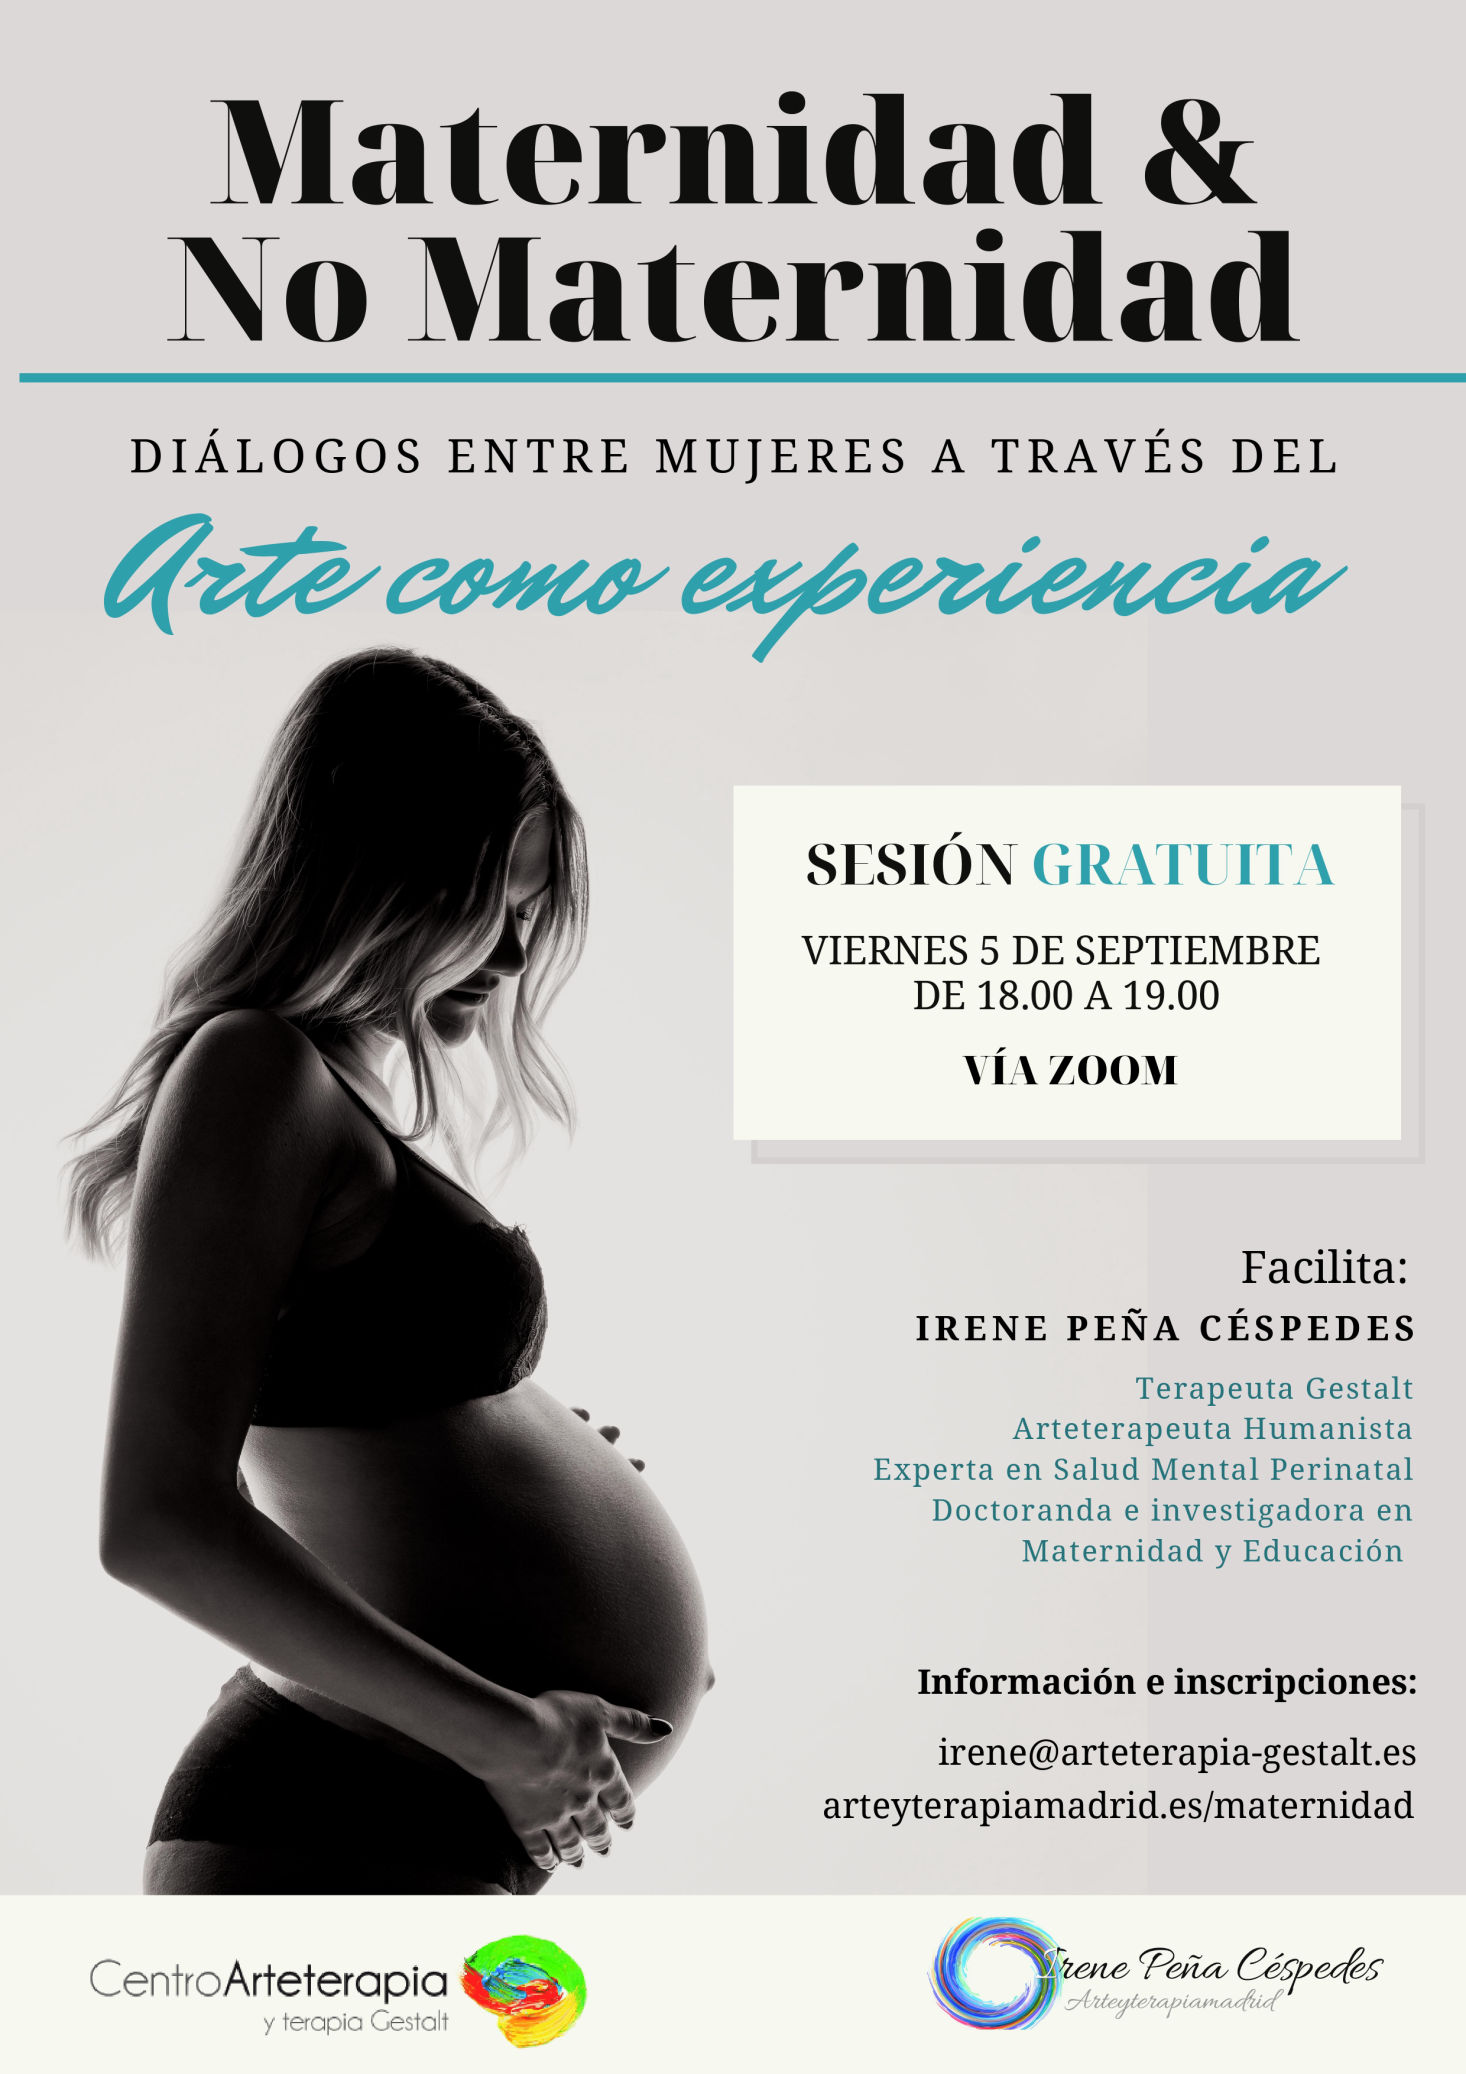 Maternidad en Madrid